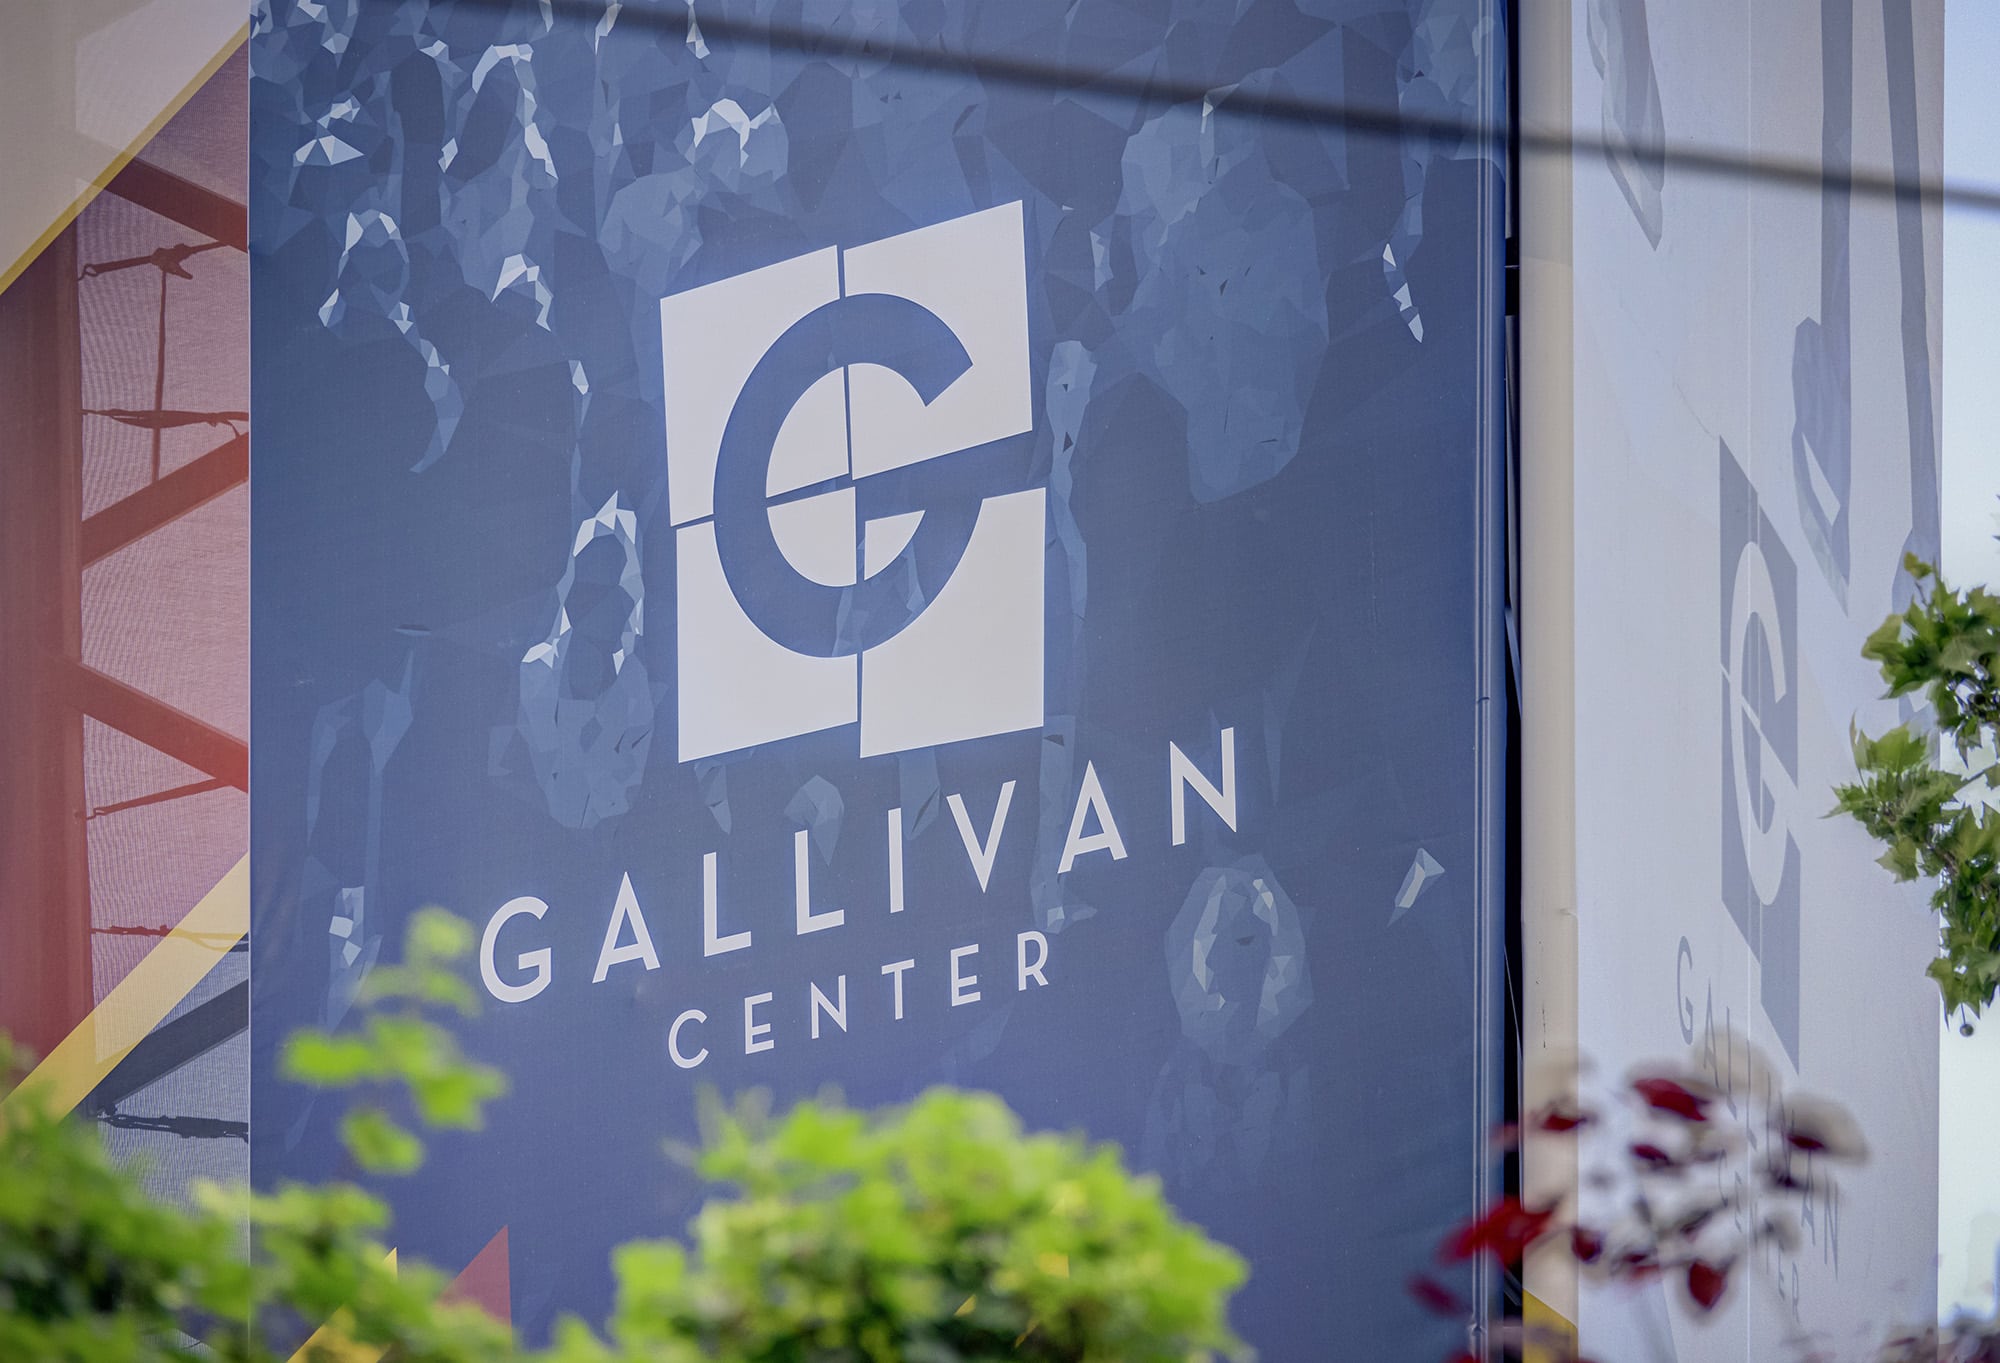 Gallivan Center sign